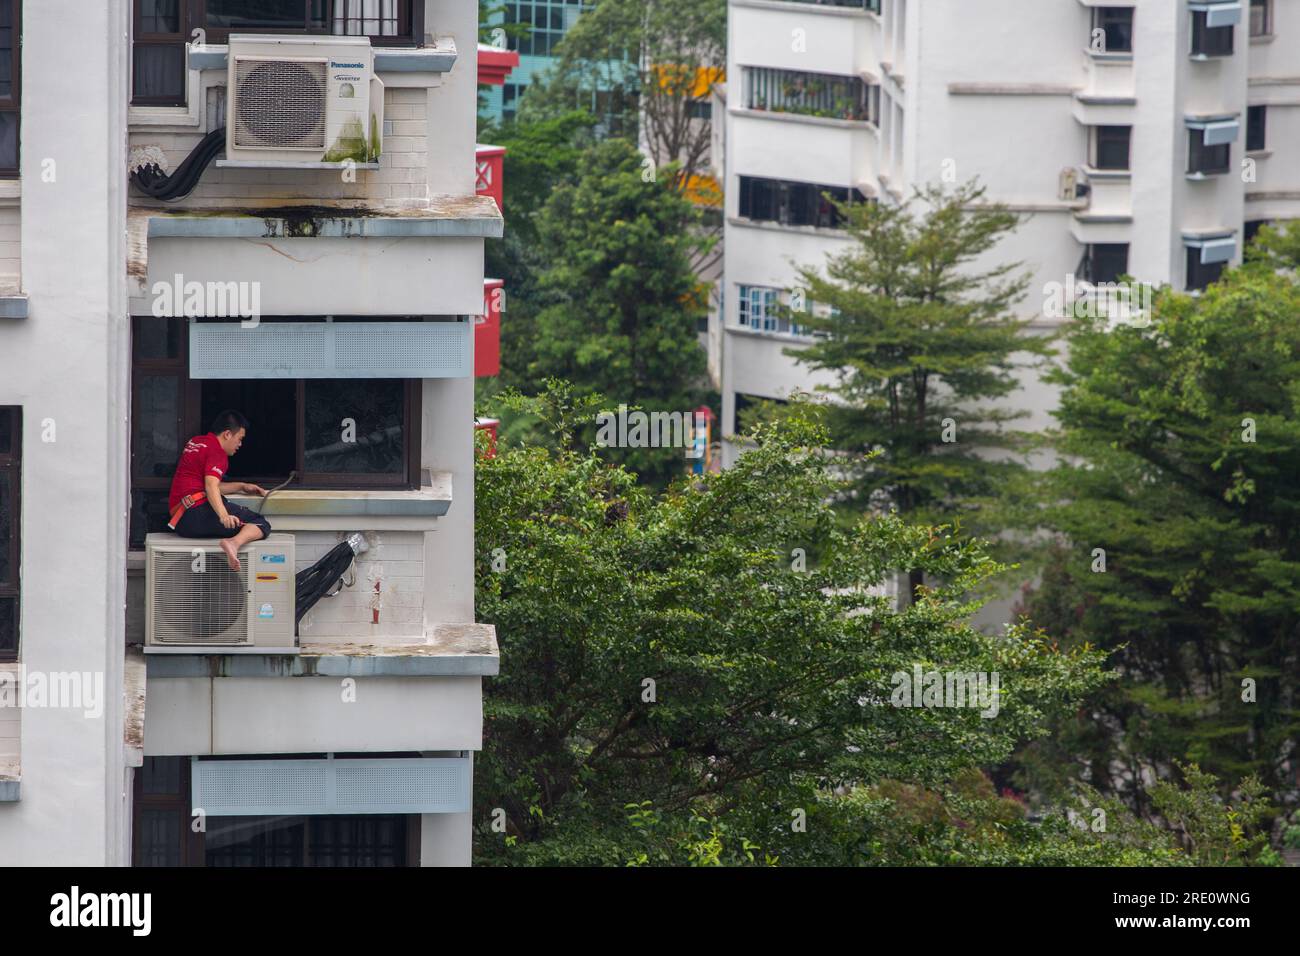 Un technicien chinois est assis sur l'unité de climatisation dans un foyer surélevé pour des travaux de réparation, un travail de service à haut risque qui nécessite un travail en hauteur. Banque D'Images